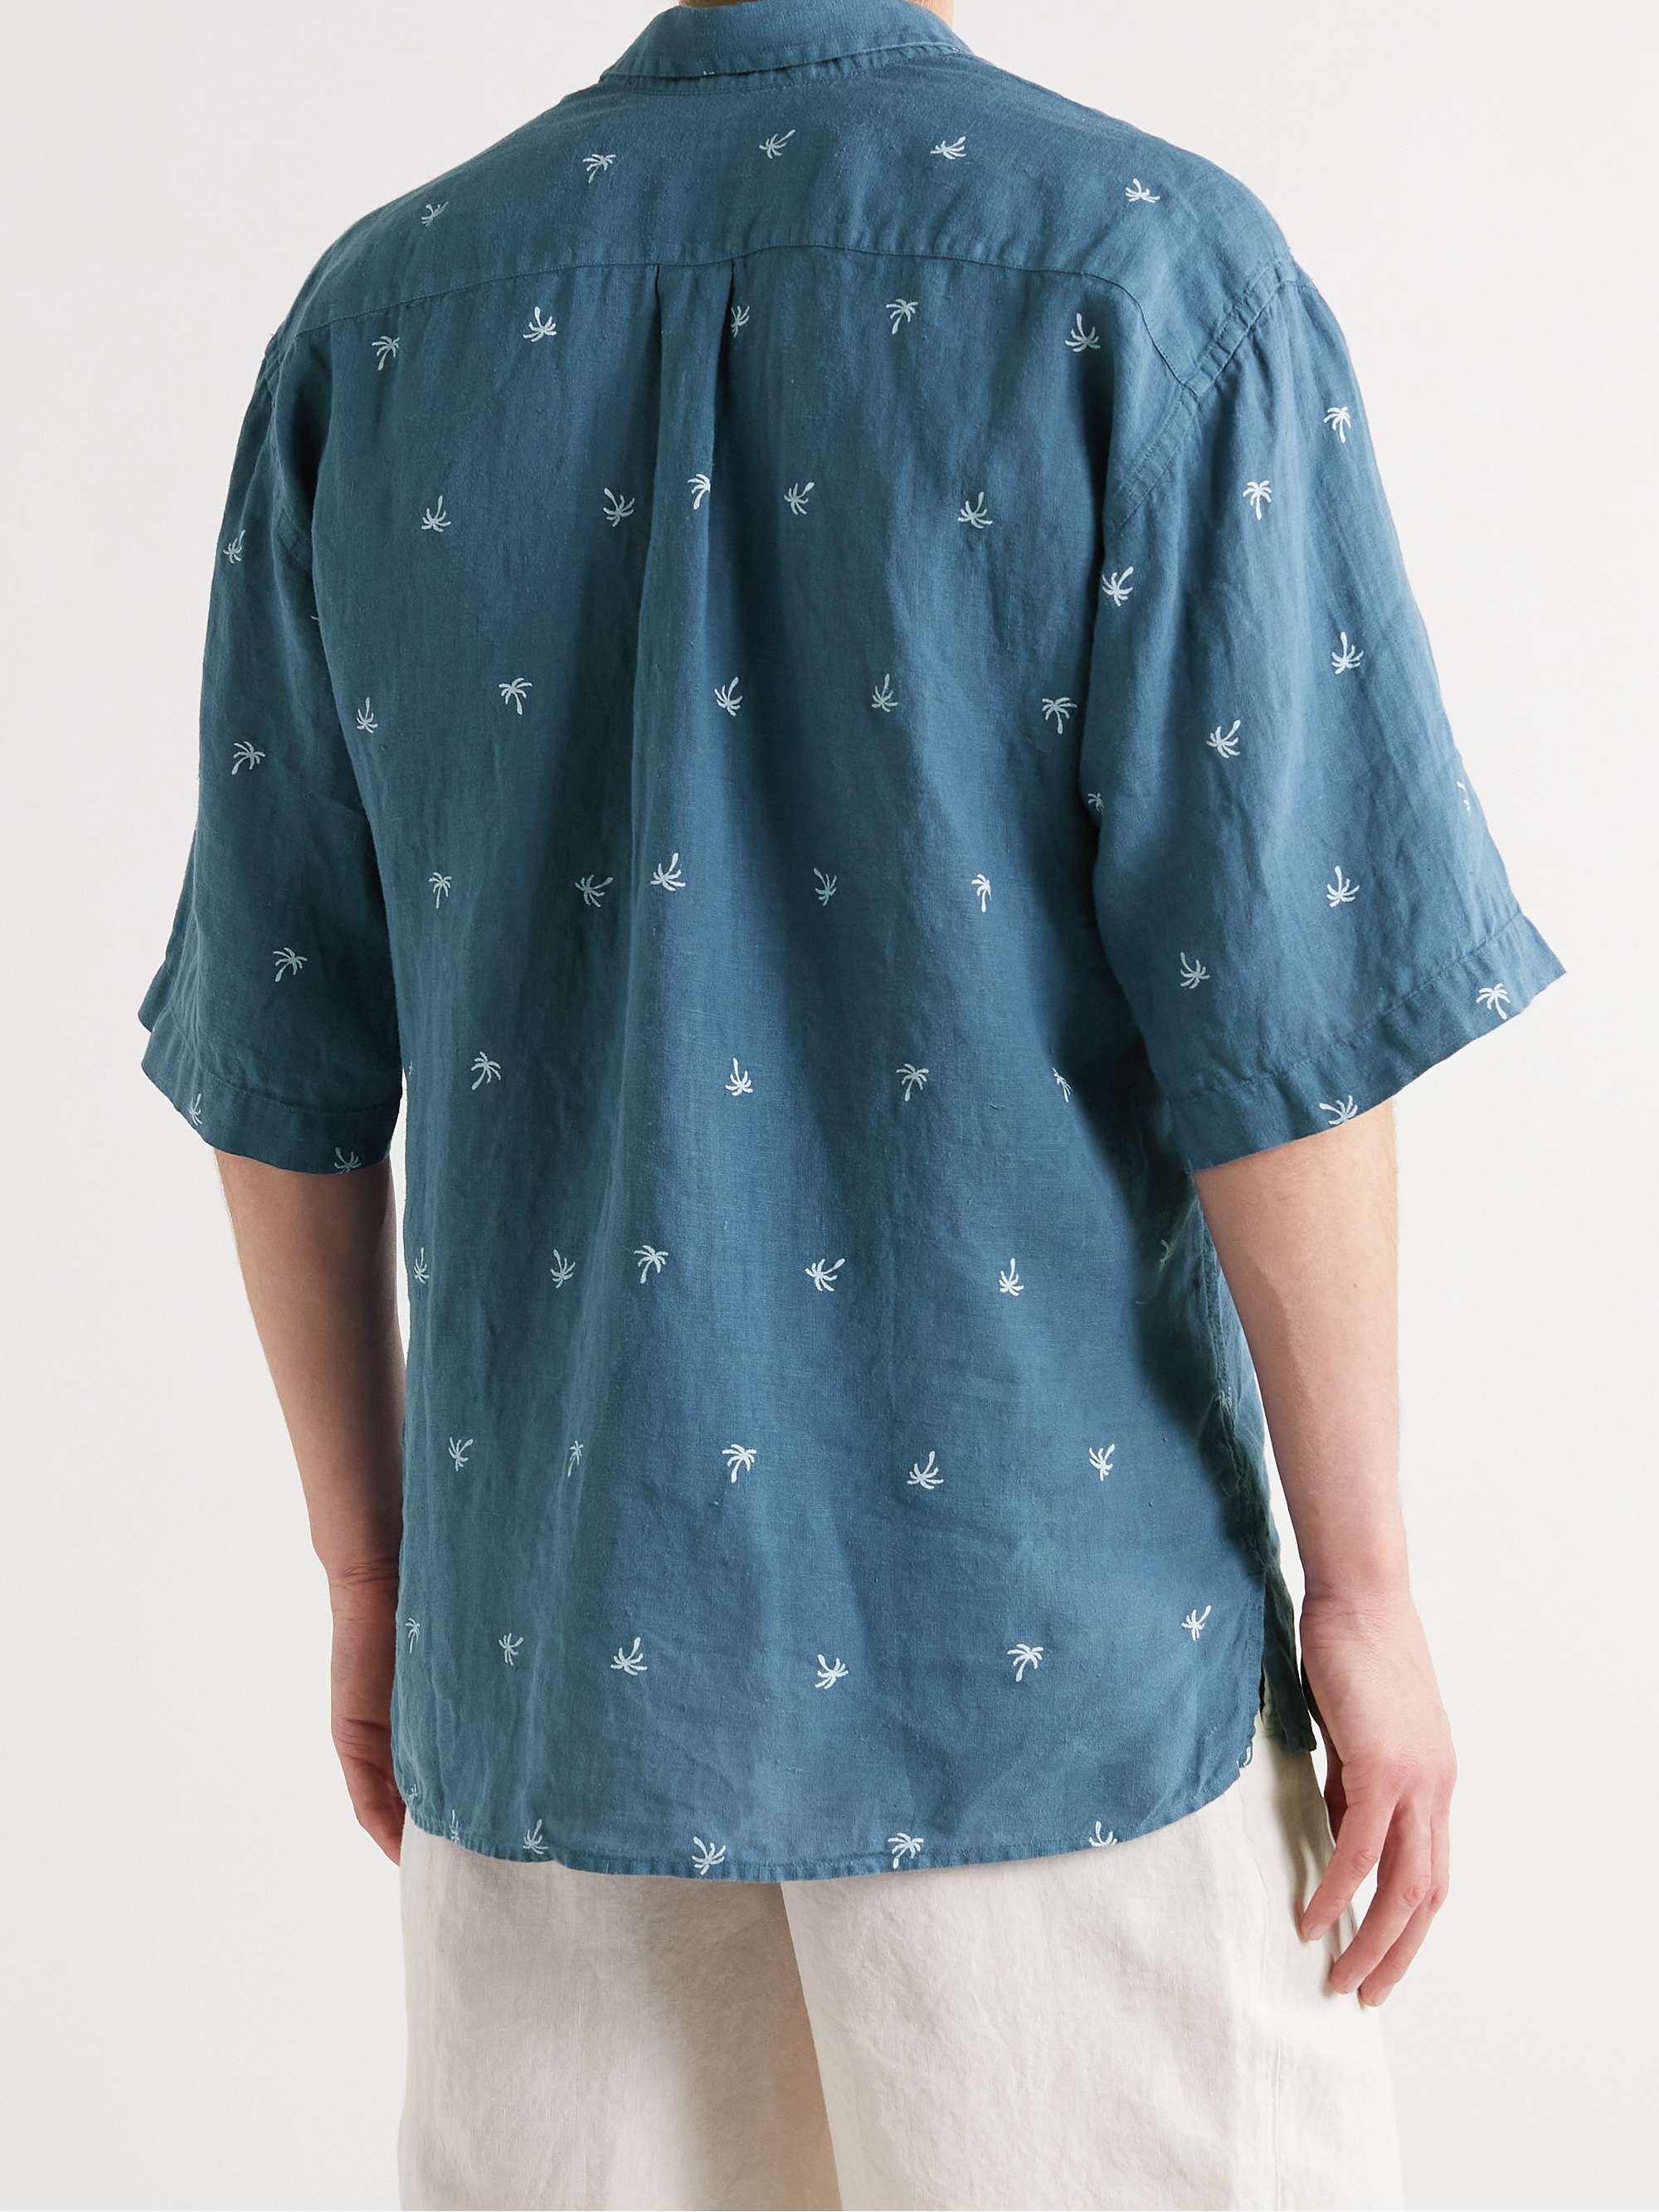 120% Printed Linen-Gauze Shirt